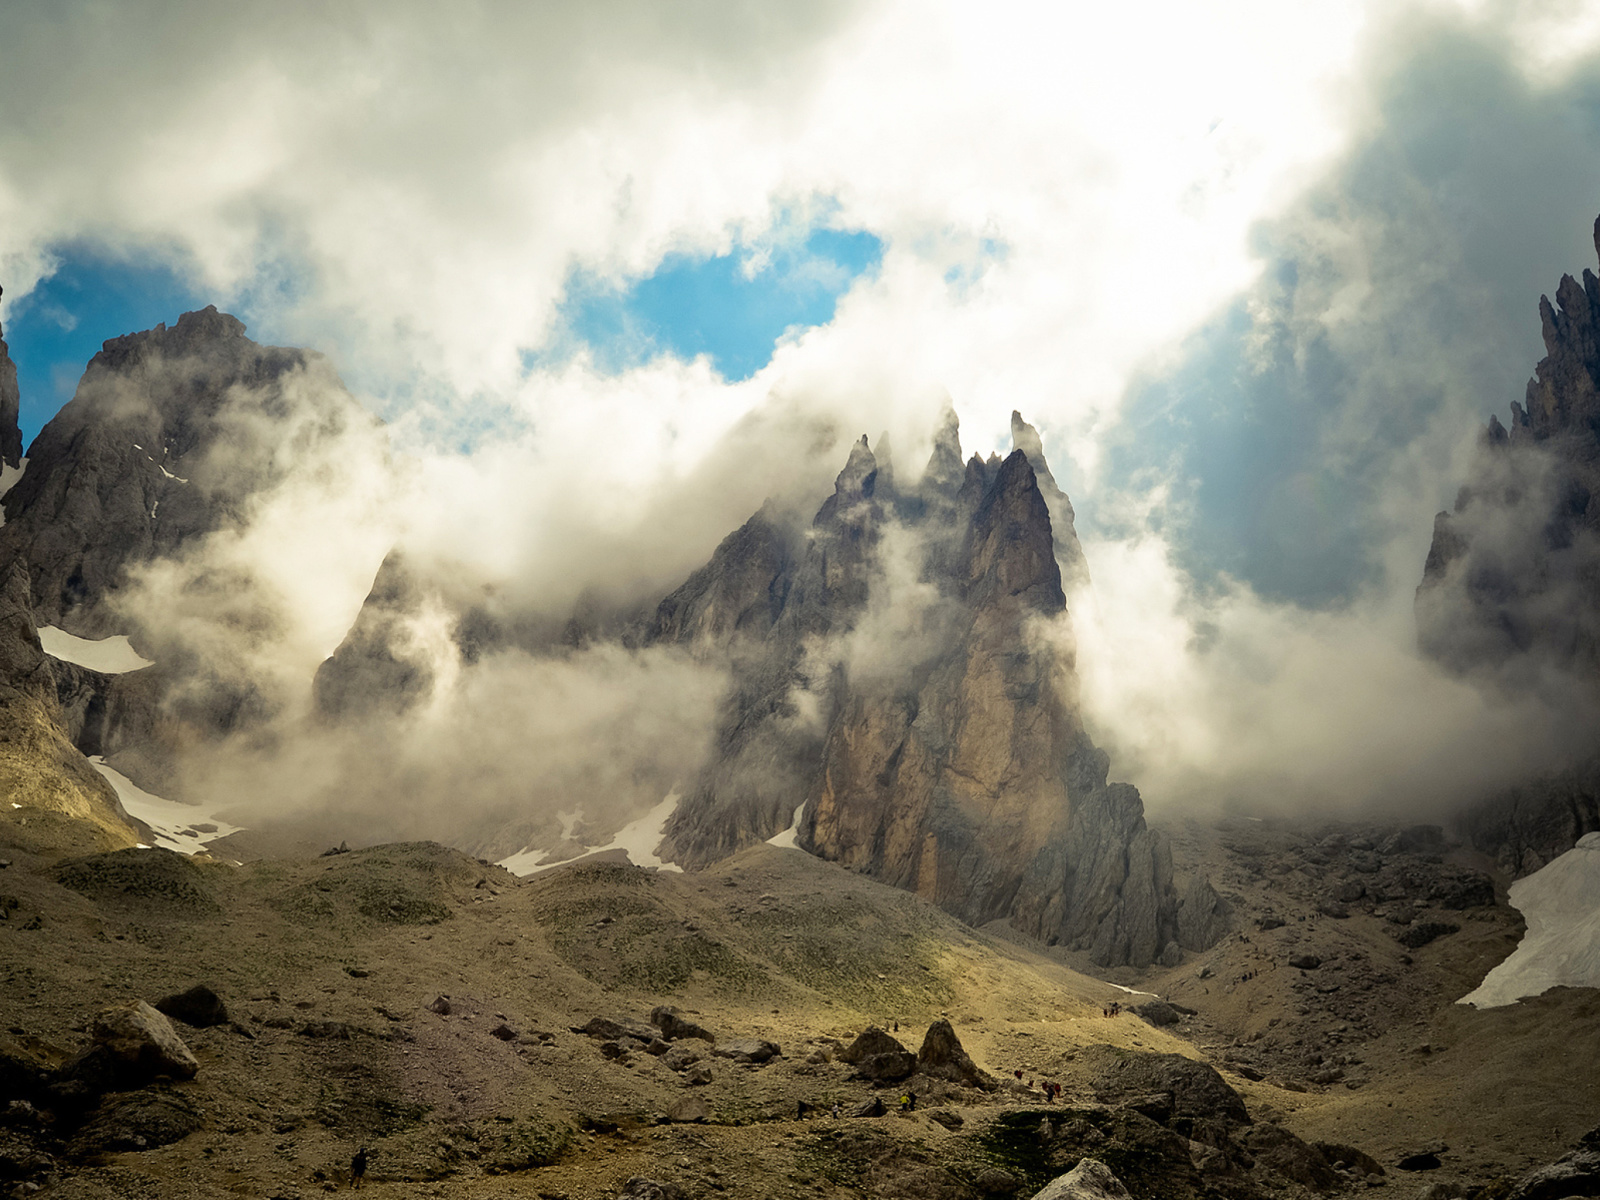 Das Mountains Peaks in Fog, Landscape Wallpaper 1600x1200